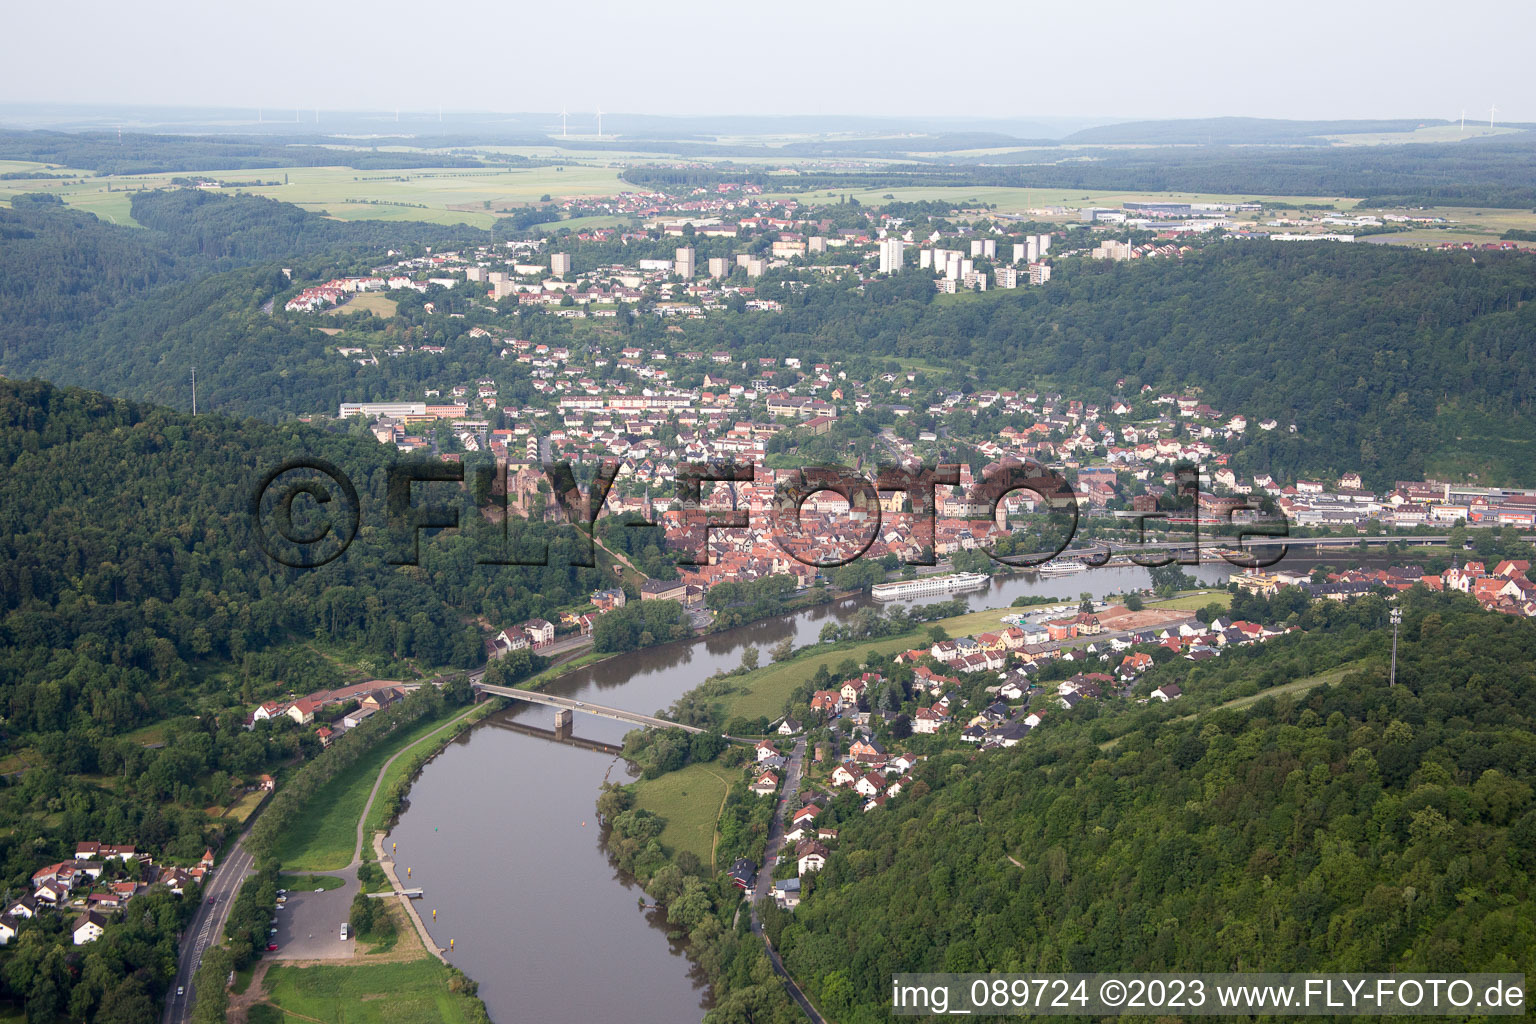 Wertheim dans le département Bade-Wurtemberg, Allemagne vue d'en haut